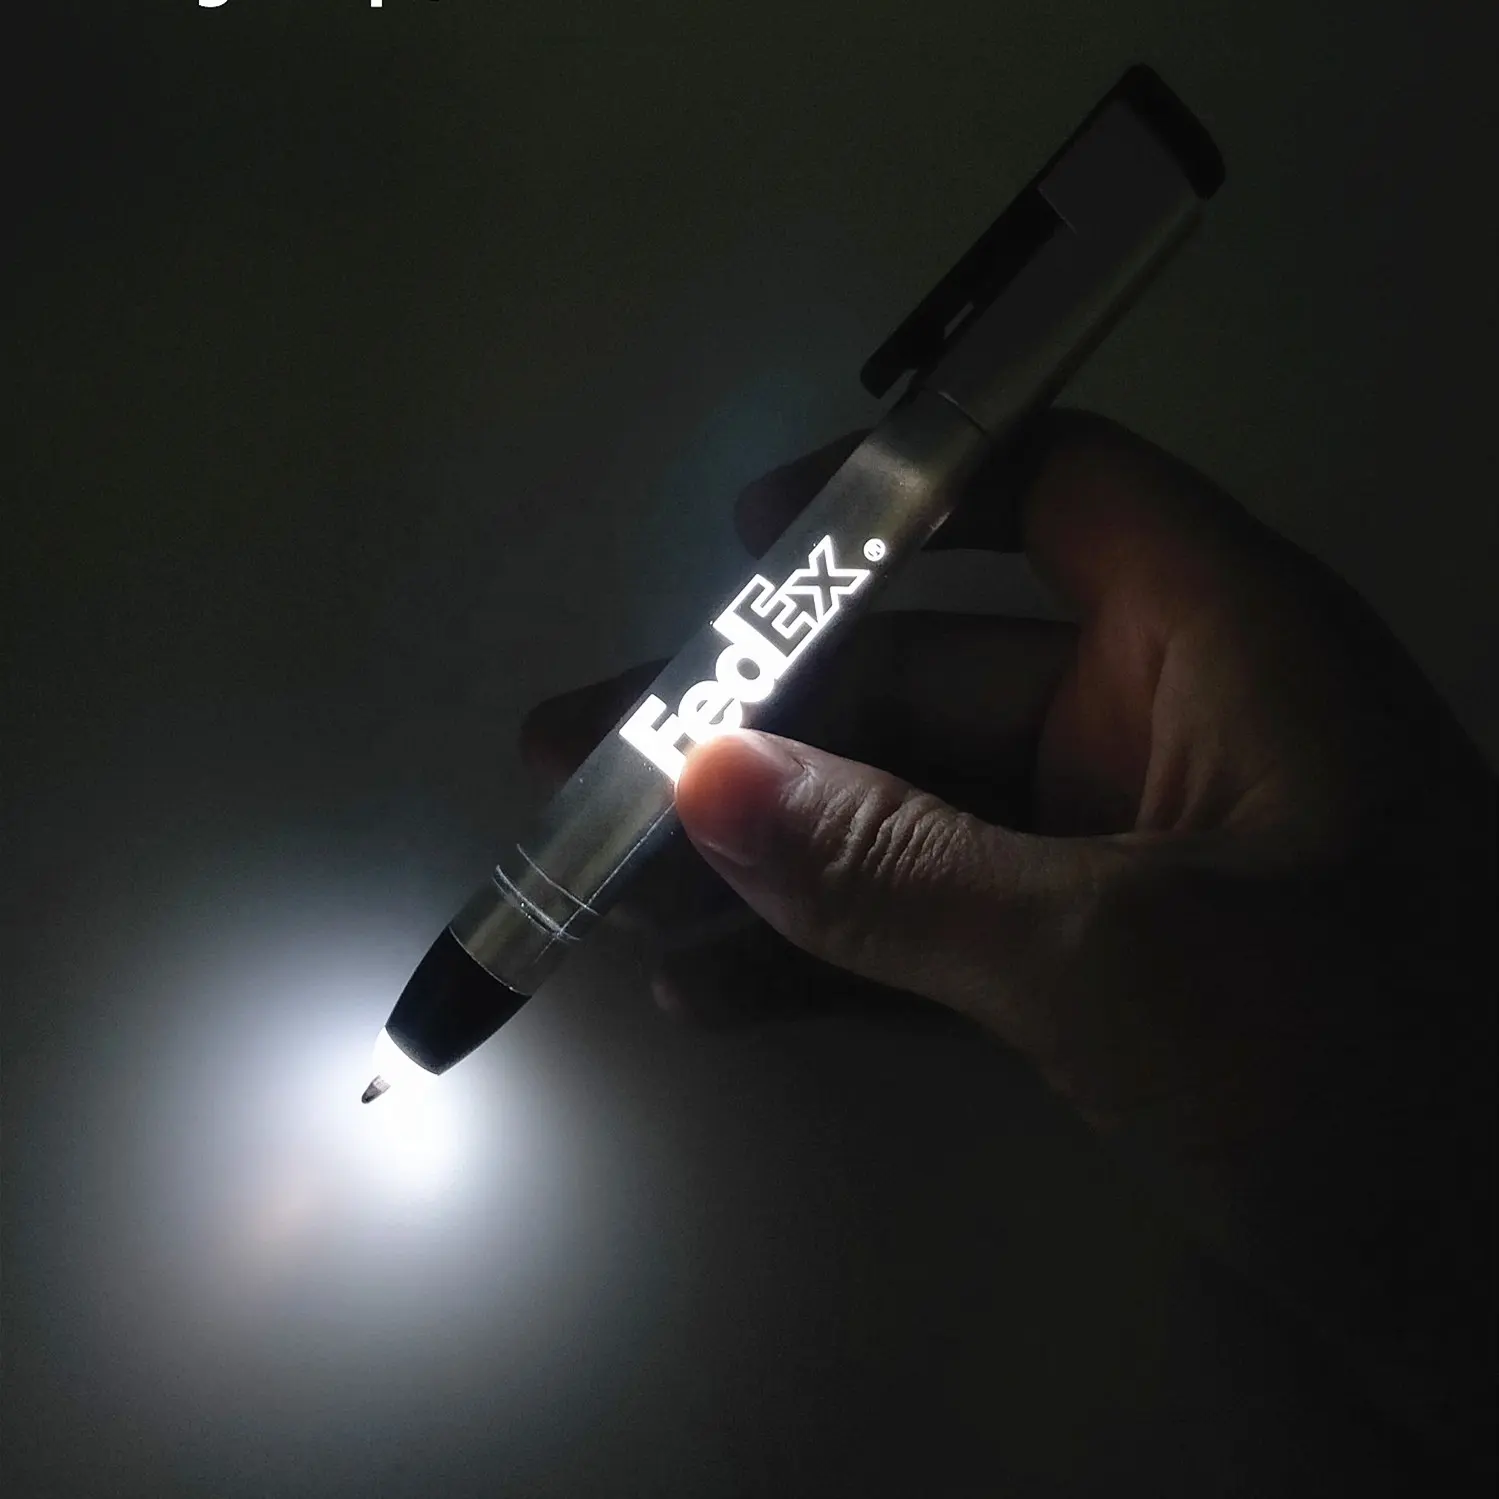 Personalizzato multi funzione affari inciso di marca penna a sfera dare via con la luce del led light touch tip up stilo penna luminosa con logo